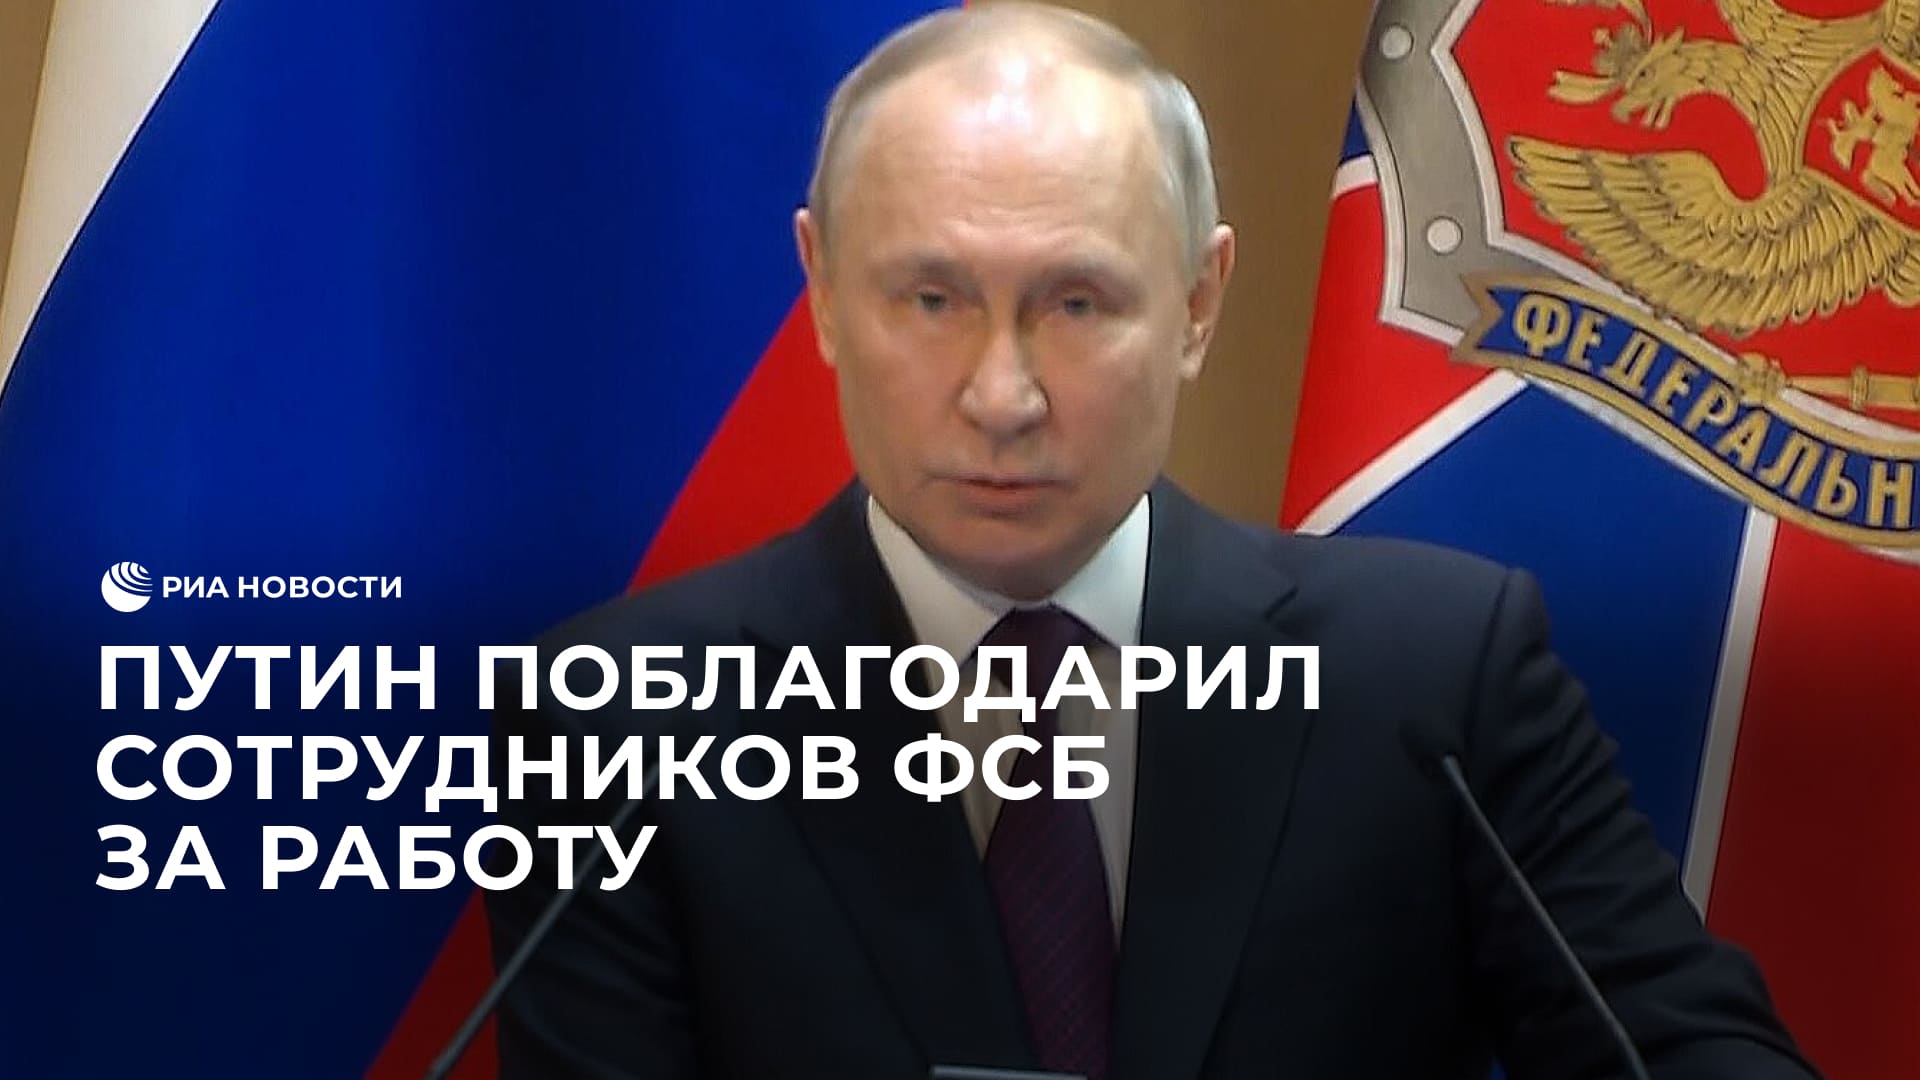 Путин поблагодарил сотрудников ФСБ